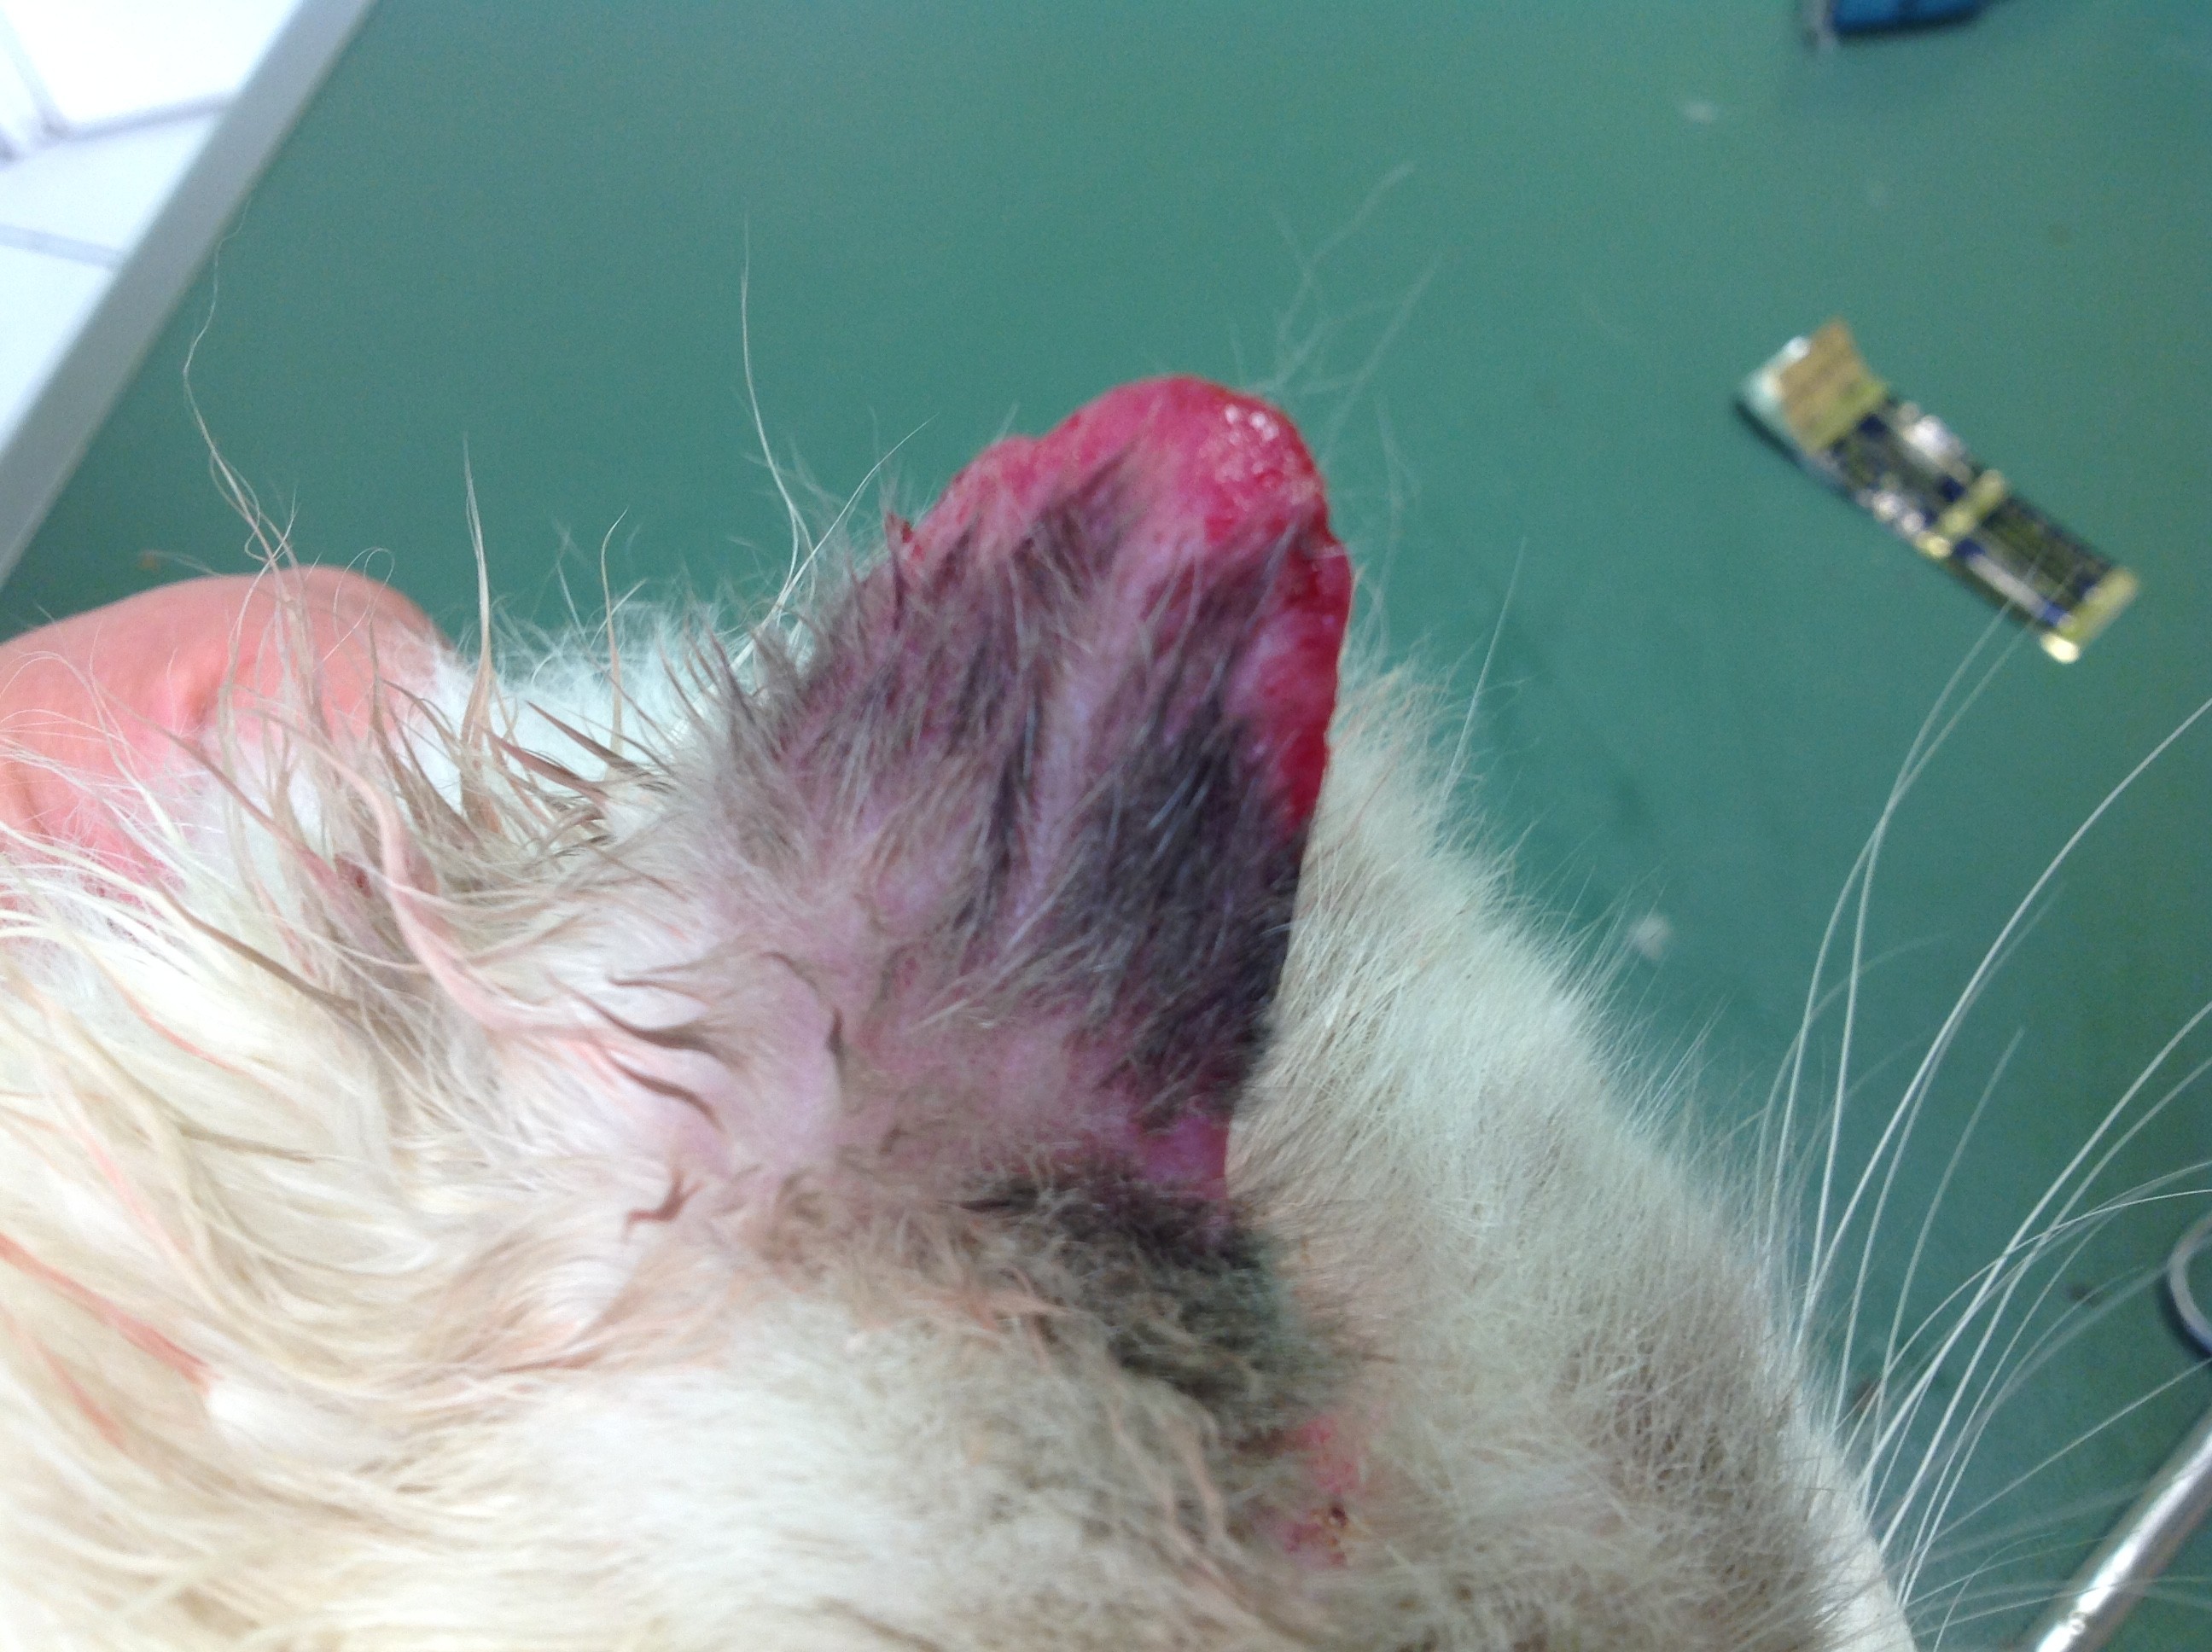 Cas d'allergie cutanée chez un chat | Clinique Vétérinaire Telo'Vet